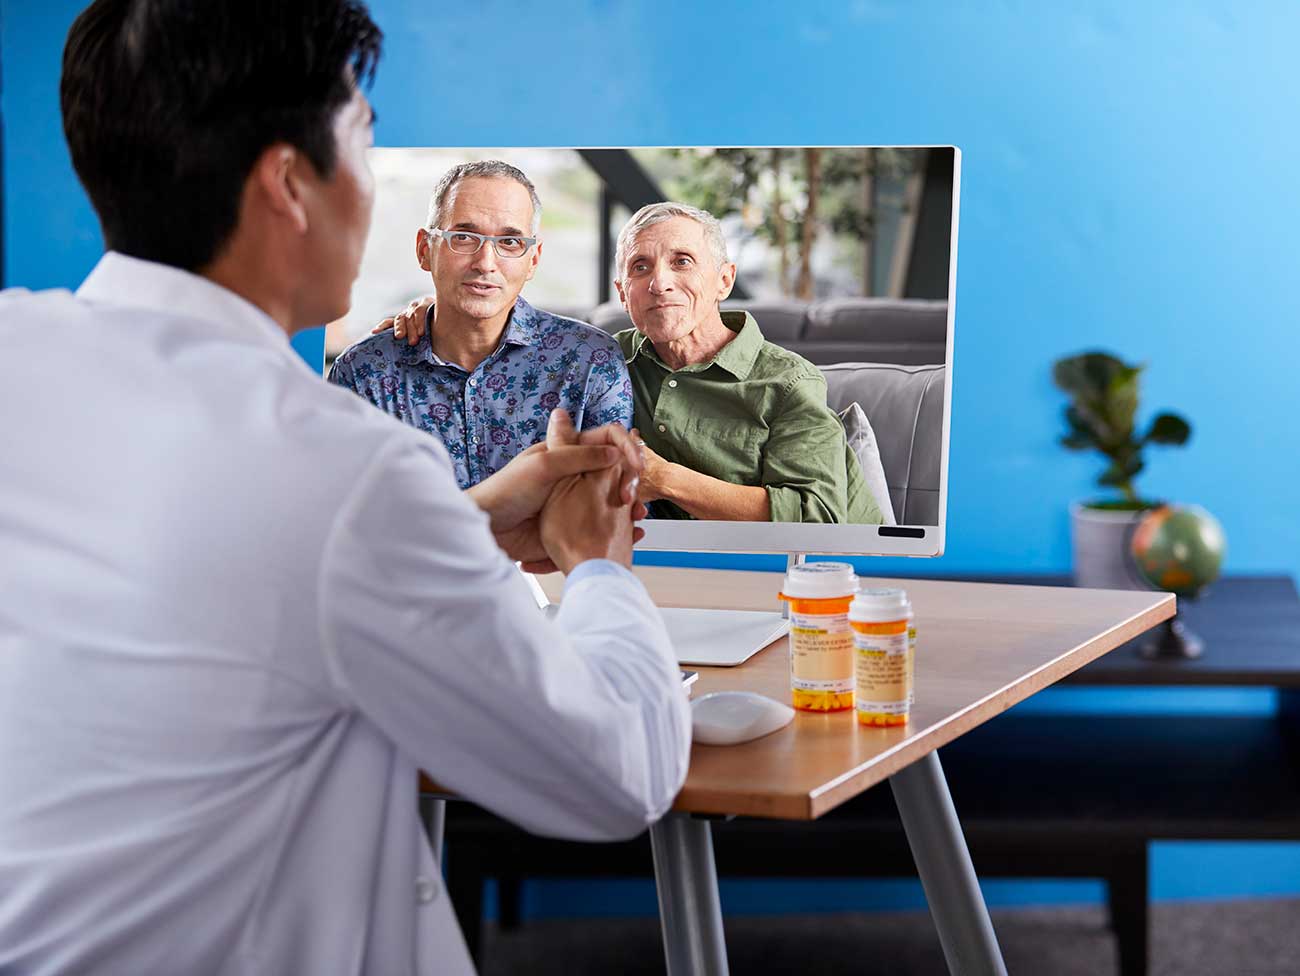 坐在桌子上的白色外套的医生通过计算机与2个老人说话